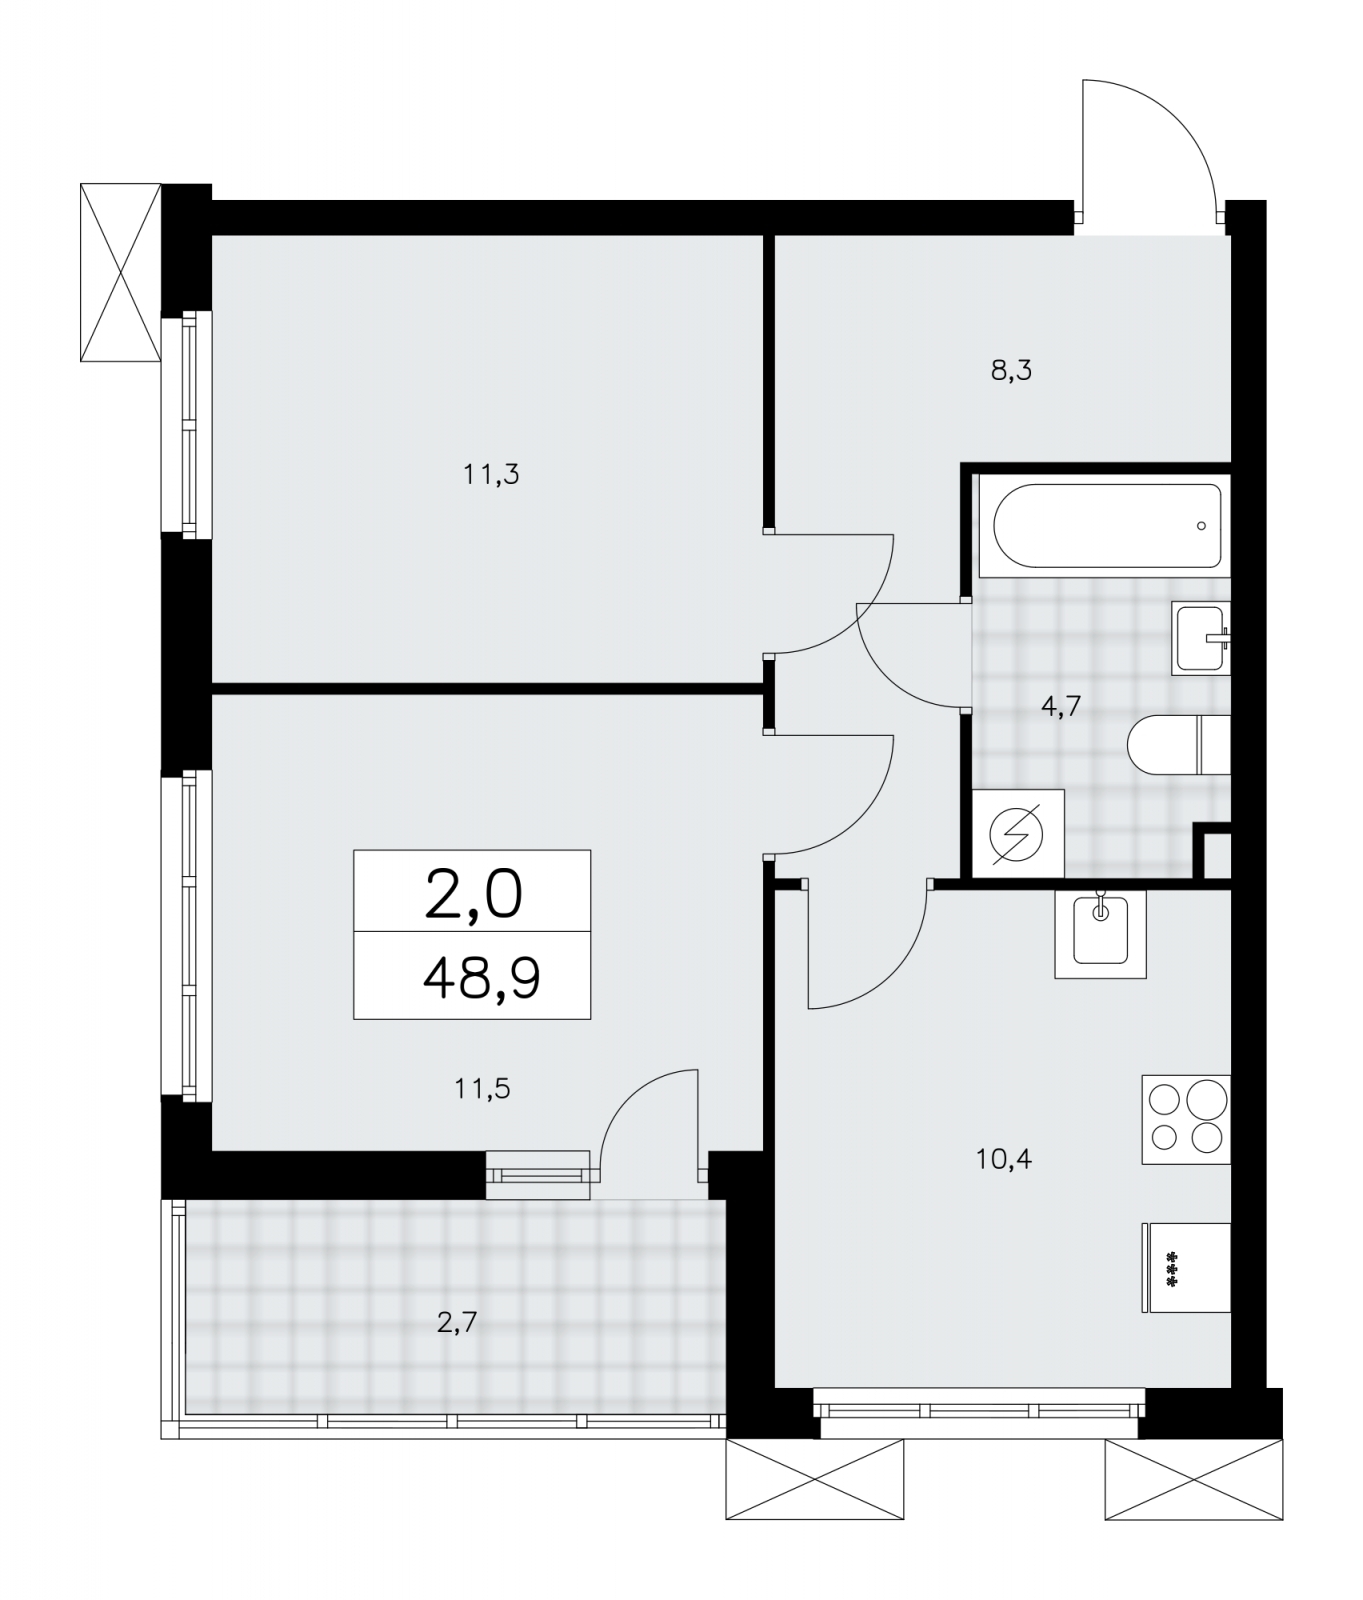 Продаю 2-комнатную квартиру с террасой в новом жилом комплексе